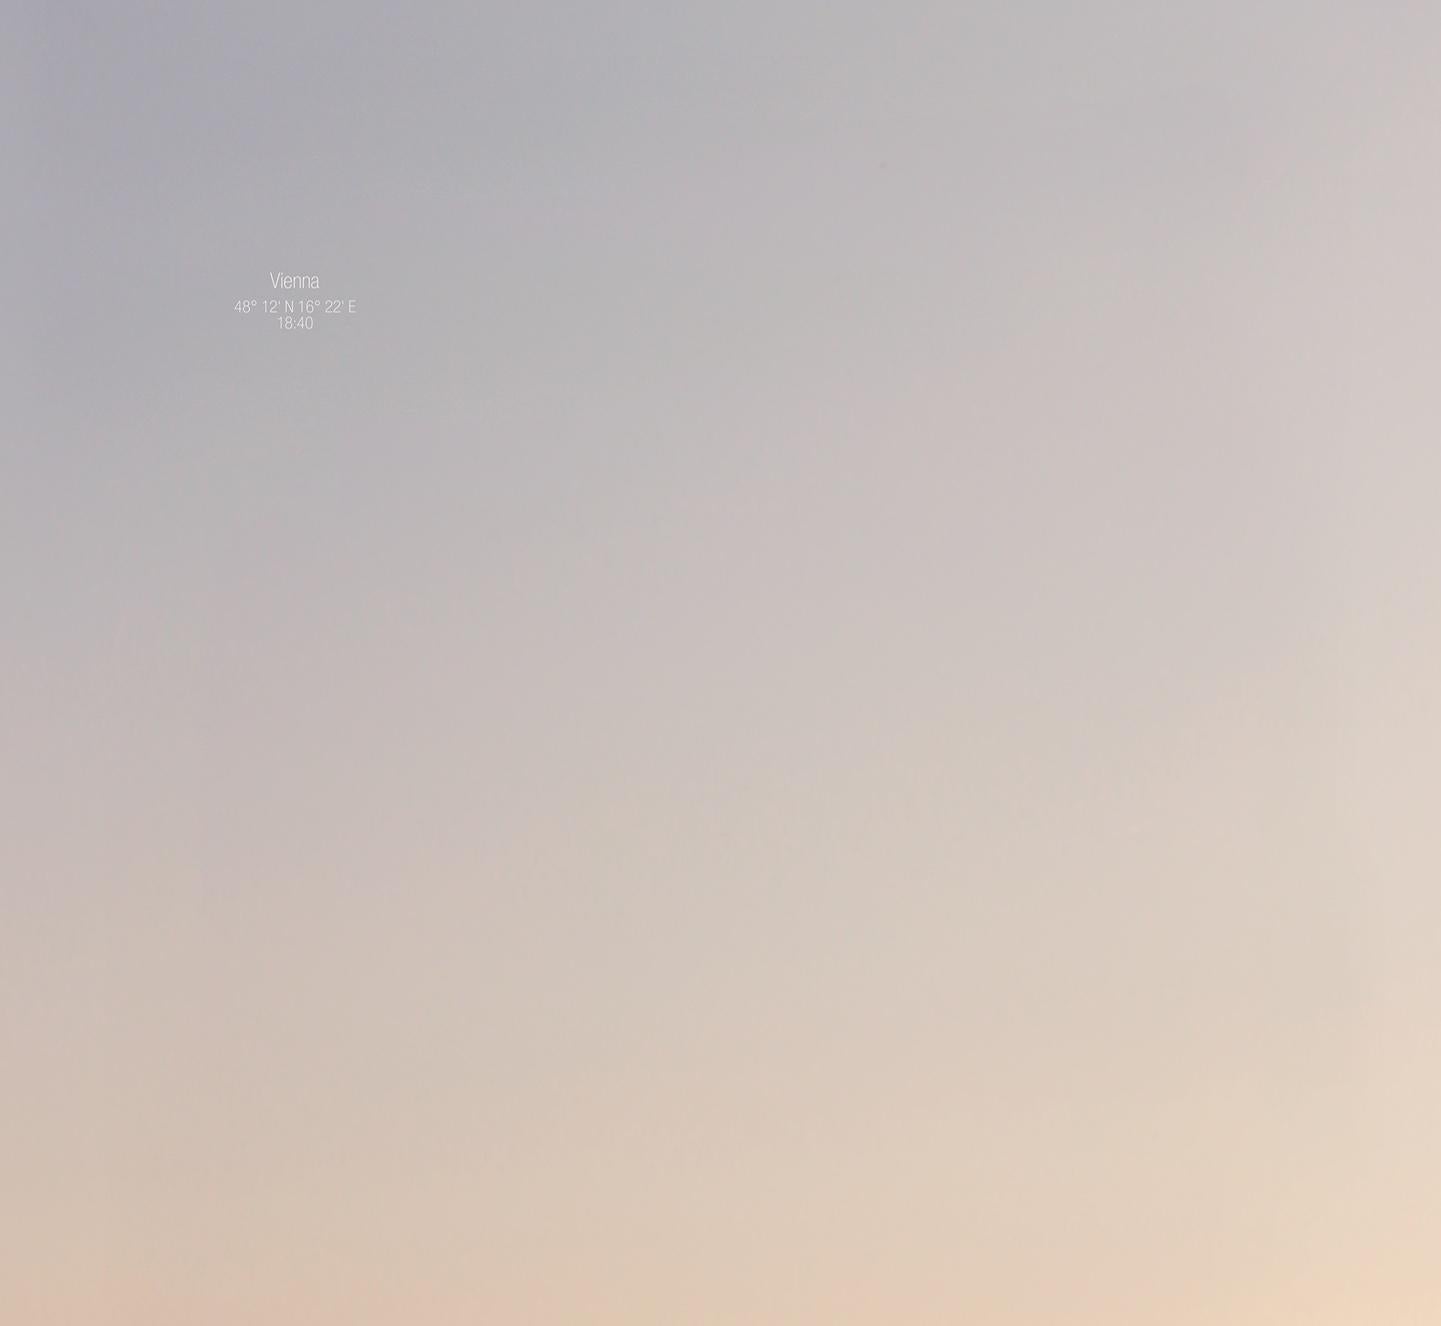 Auf der anderen Seite des Himmels - Abstrakte Farbfotografie des 21. Jahrhunderts Sonnenuntergang
Triest / Wien, 18:40
Diptychon, 2 Stücke, je 70 x 50 cm
Ausgabe 2/5+2 AP
Die Drucke sind ungerahmt und werden mit vom Künstler signierten Labels